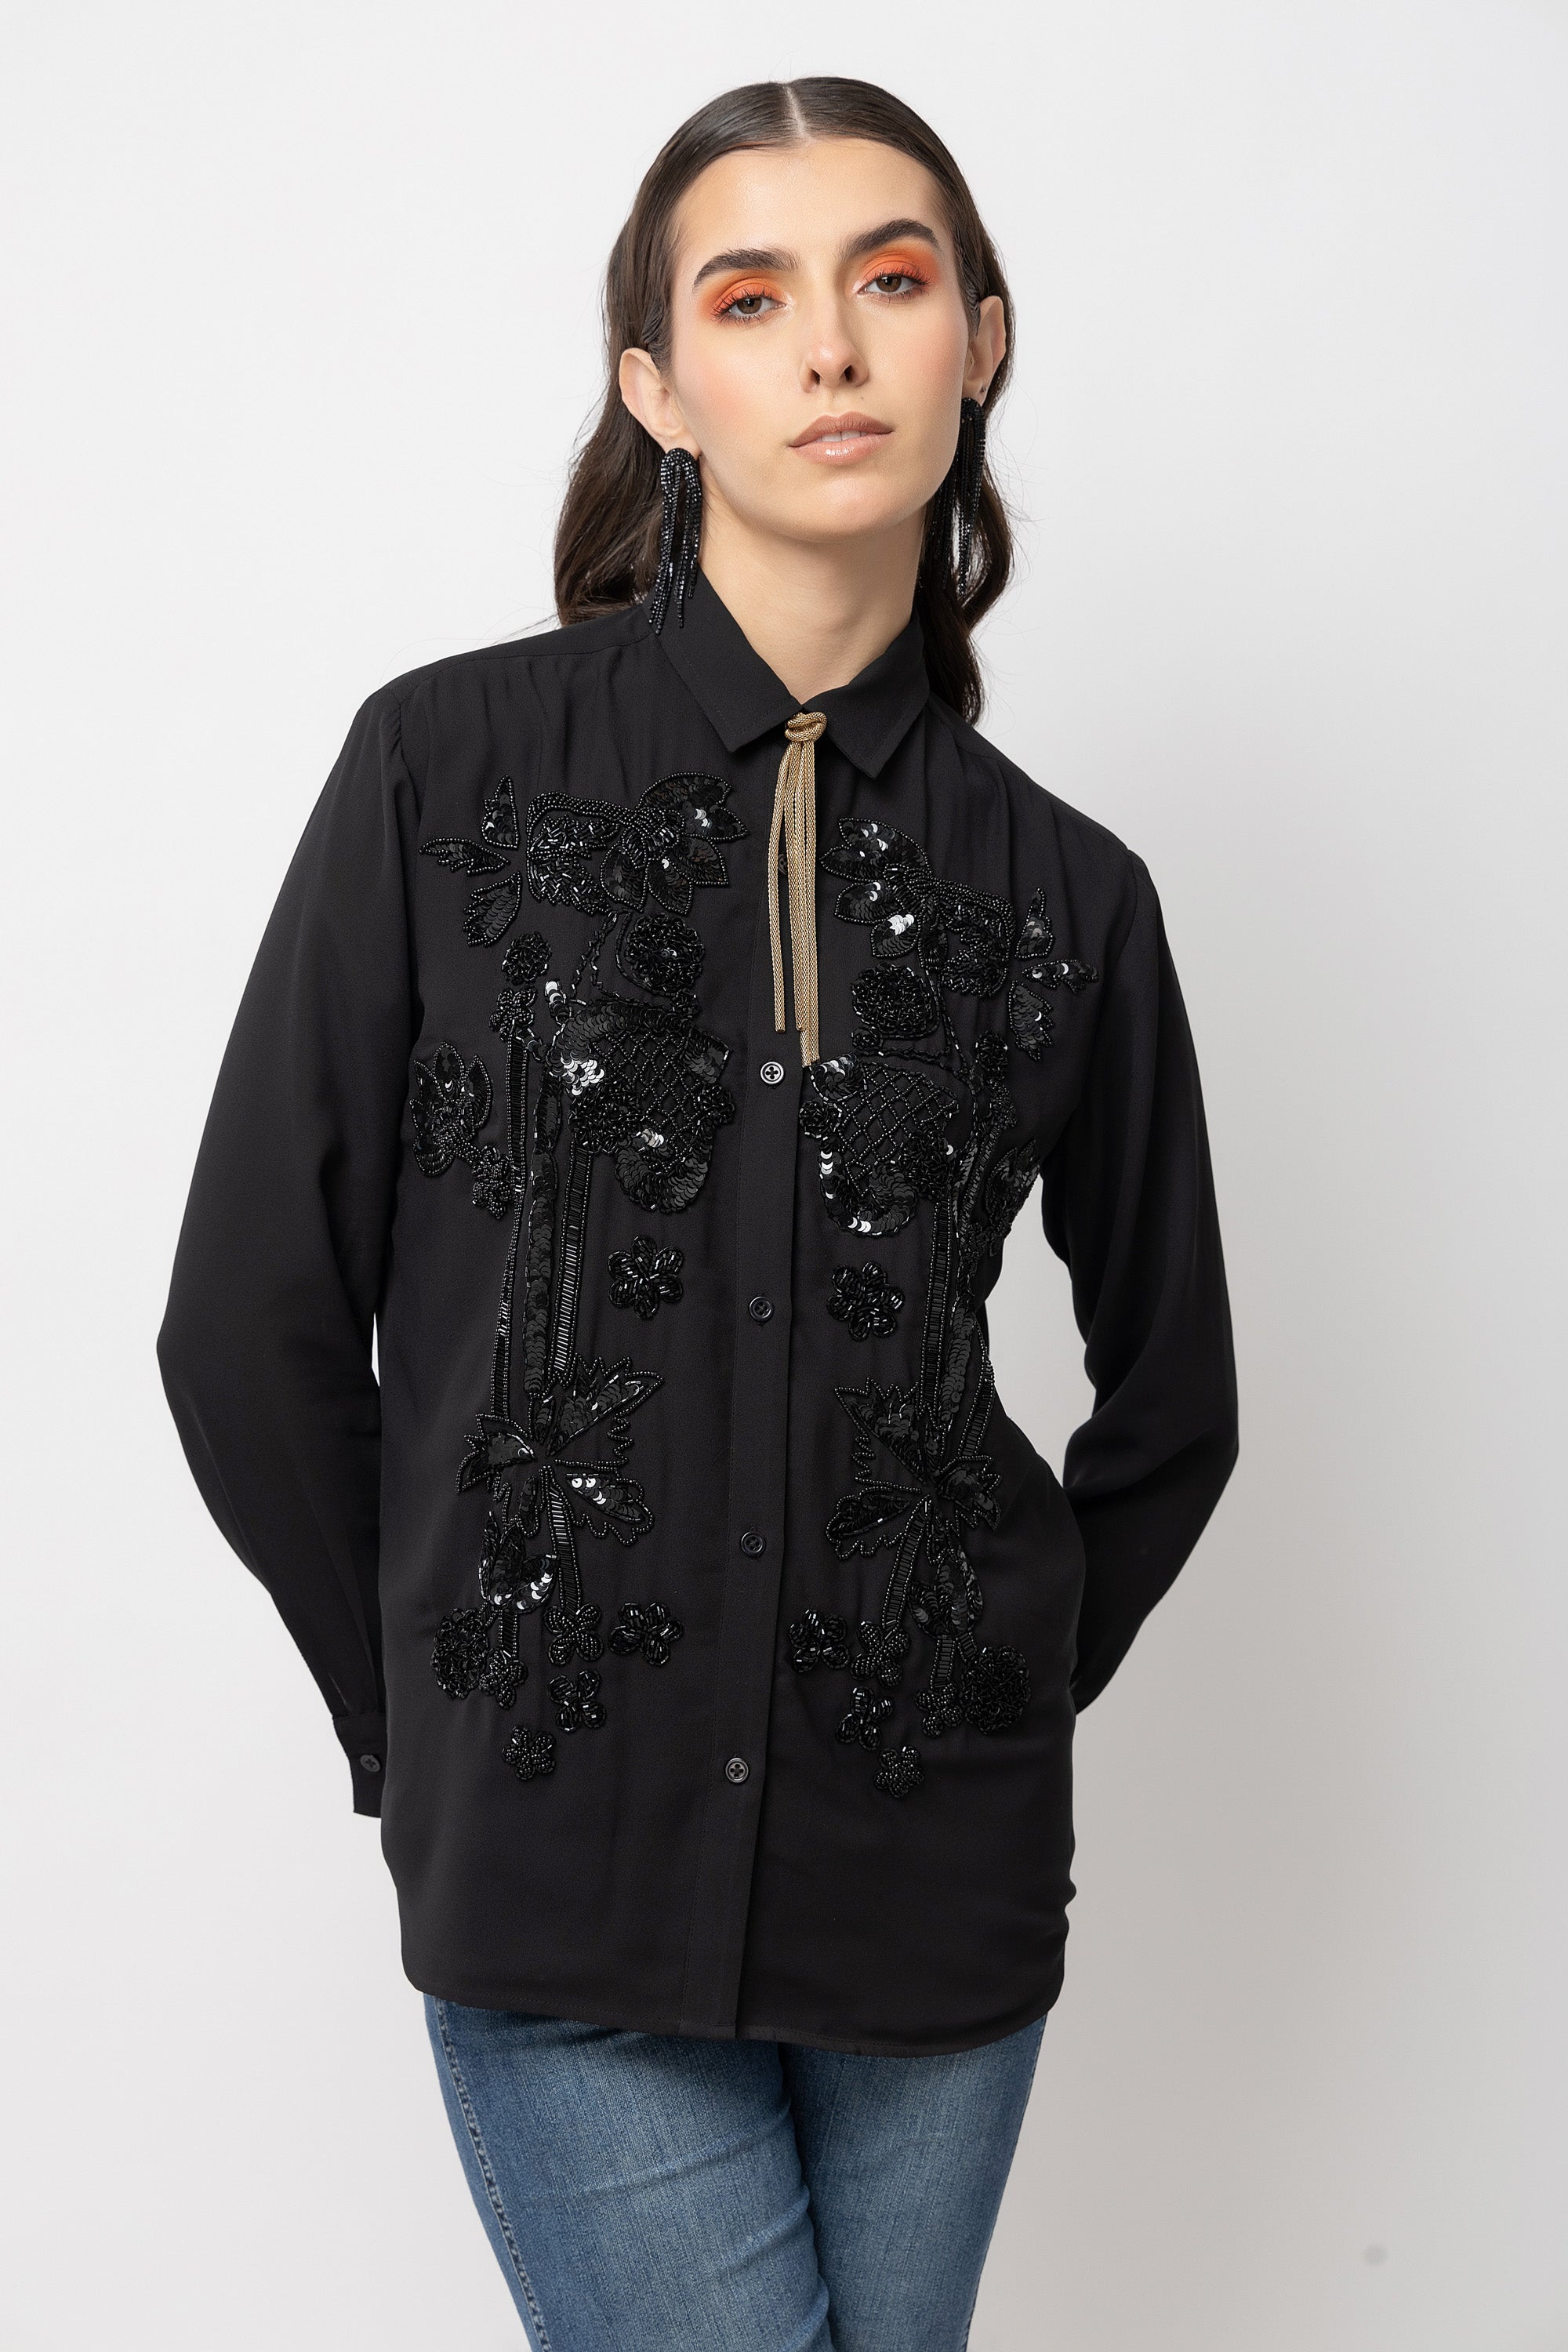 Enigma Embellished Black Shirt